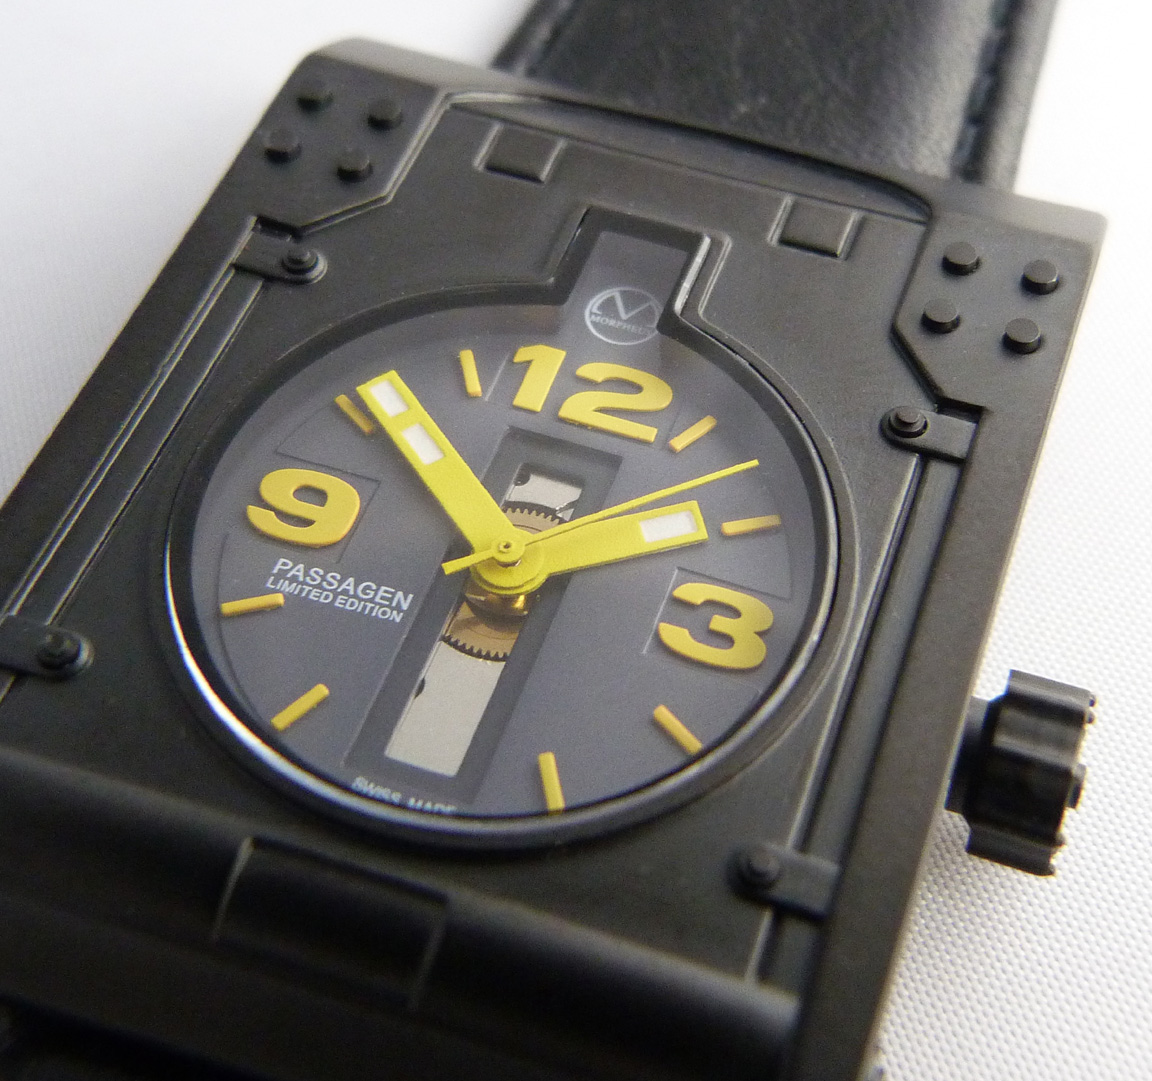 Giger Passagen watch from Morpheus Swiss made